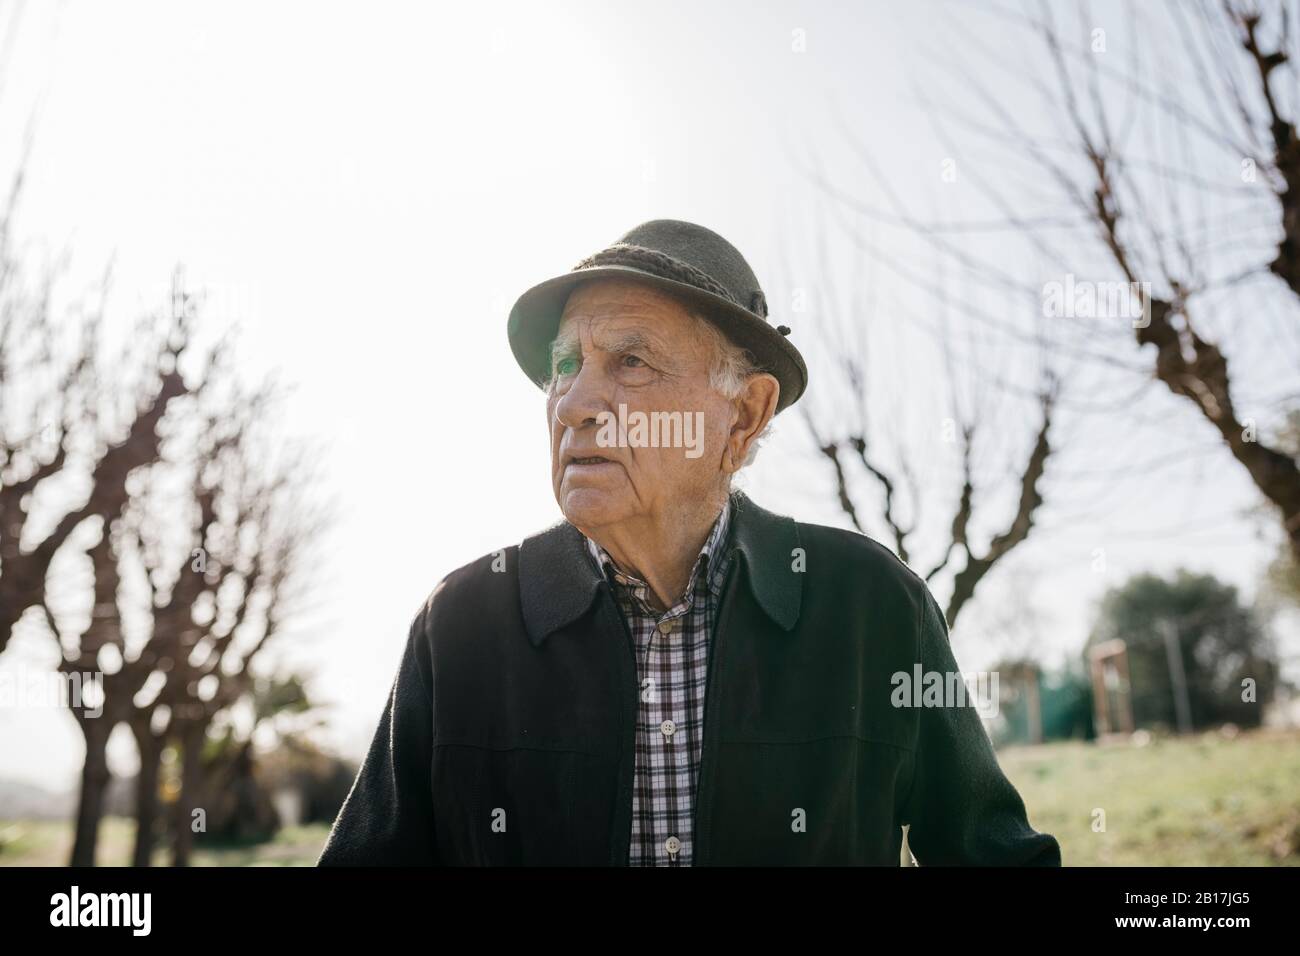 Old man walking in winter park, portrait Stock Photo